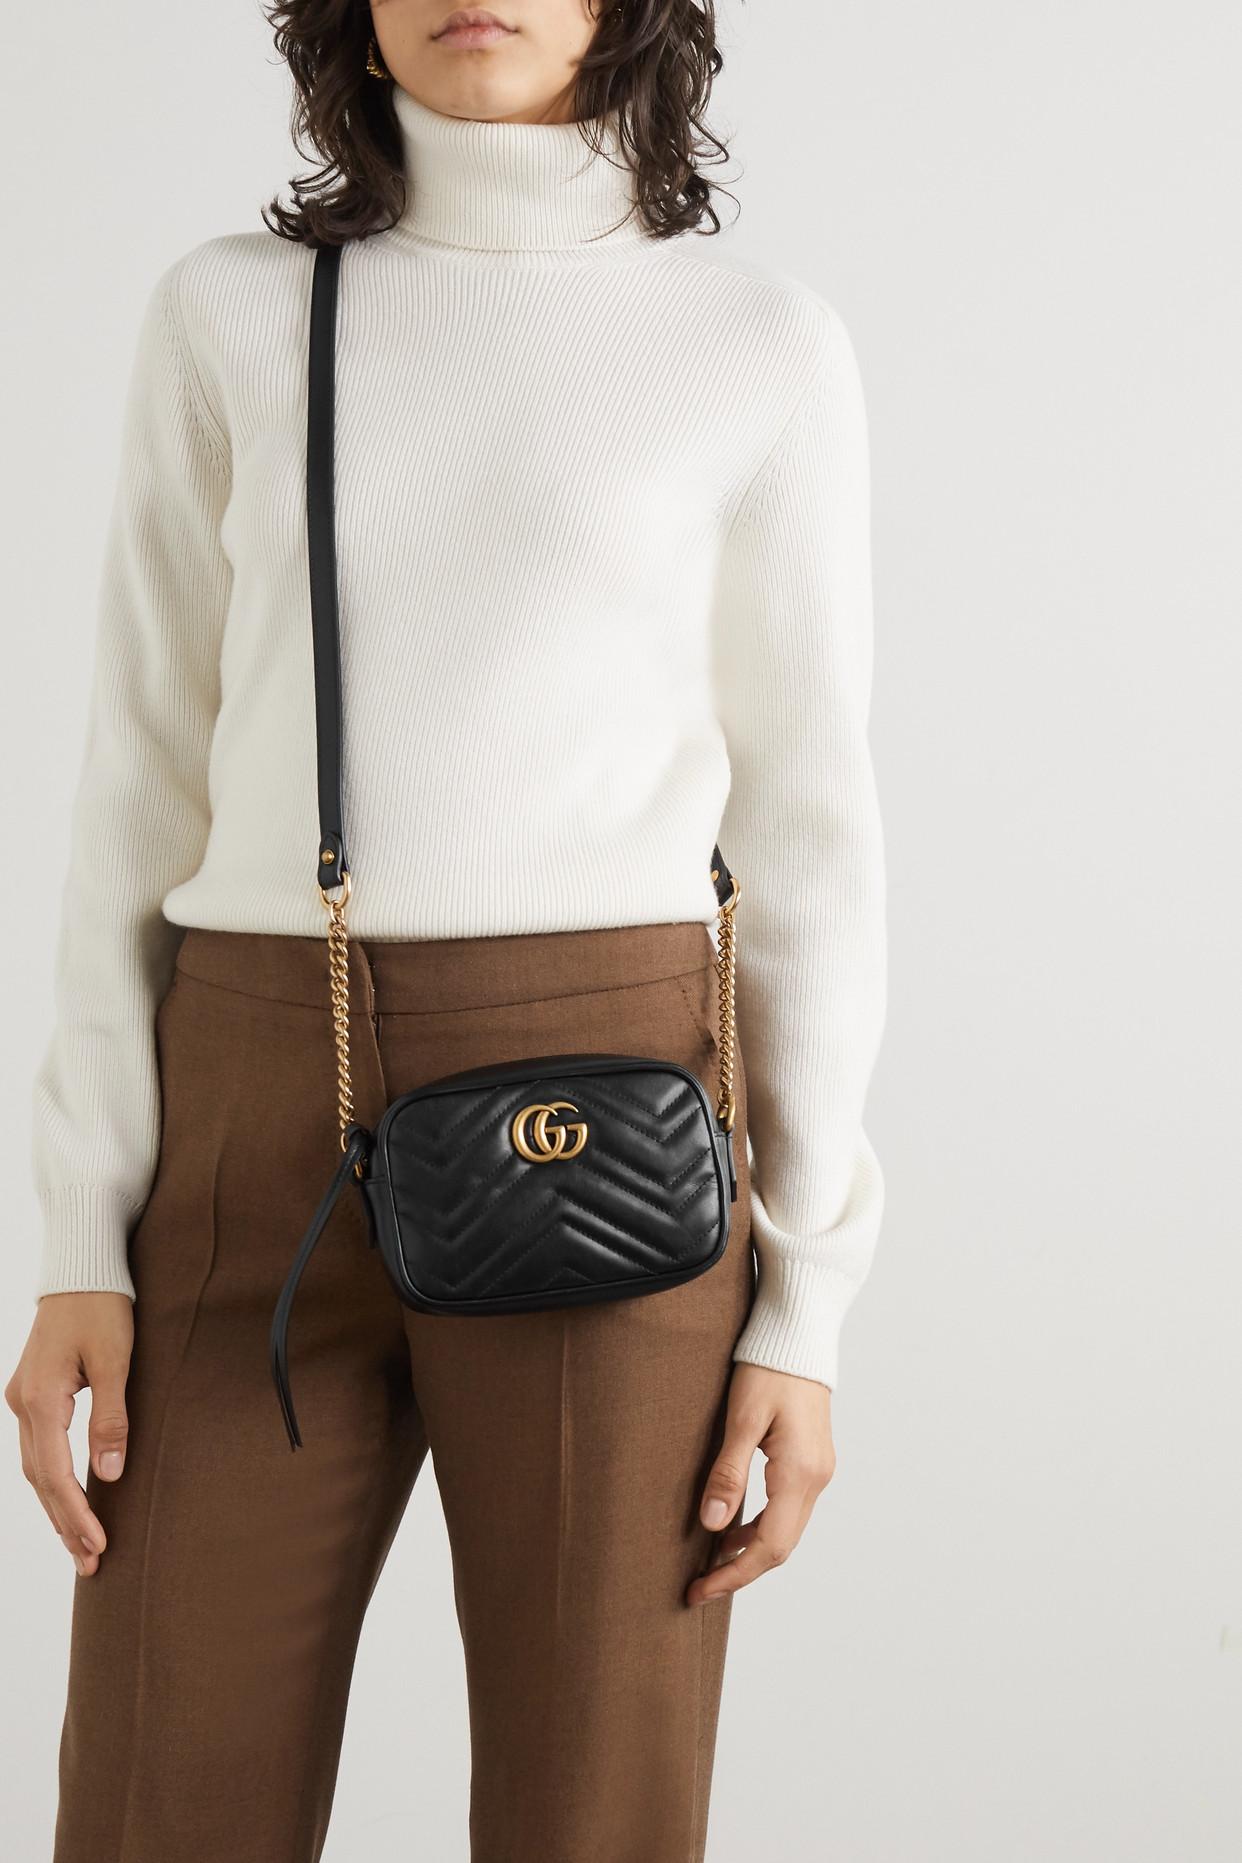 Gucci's Marmont Mini Camera Bag in Black